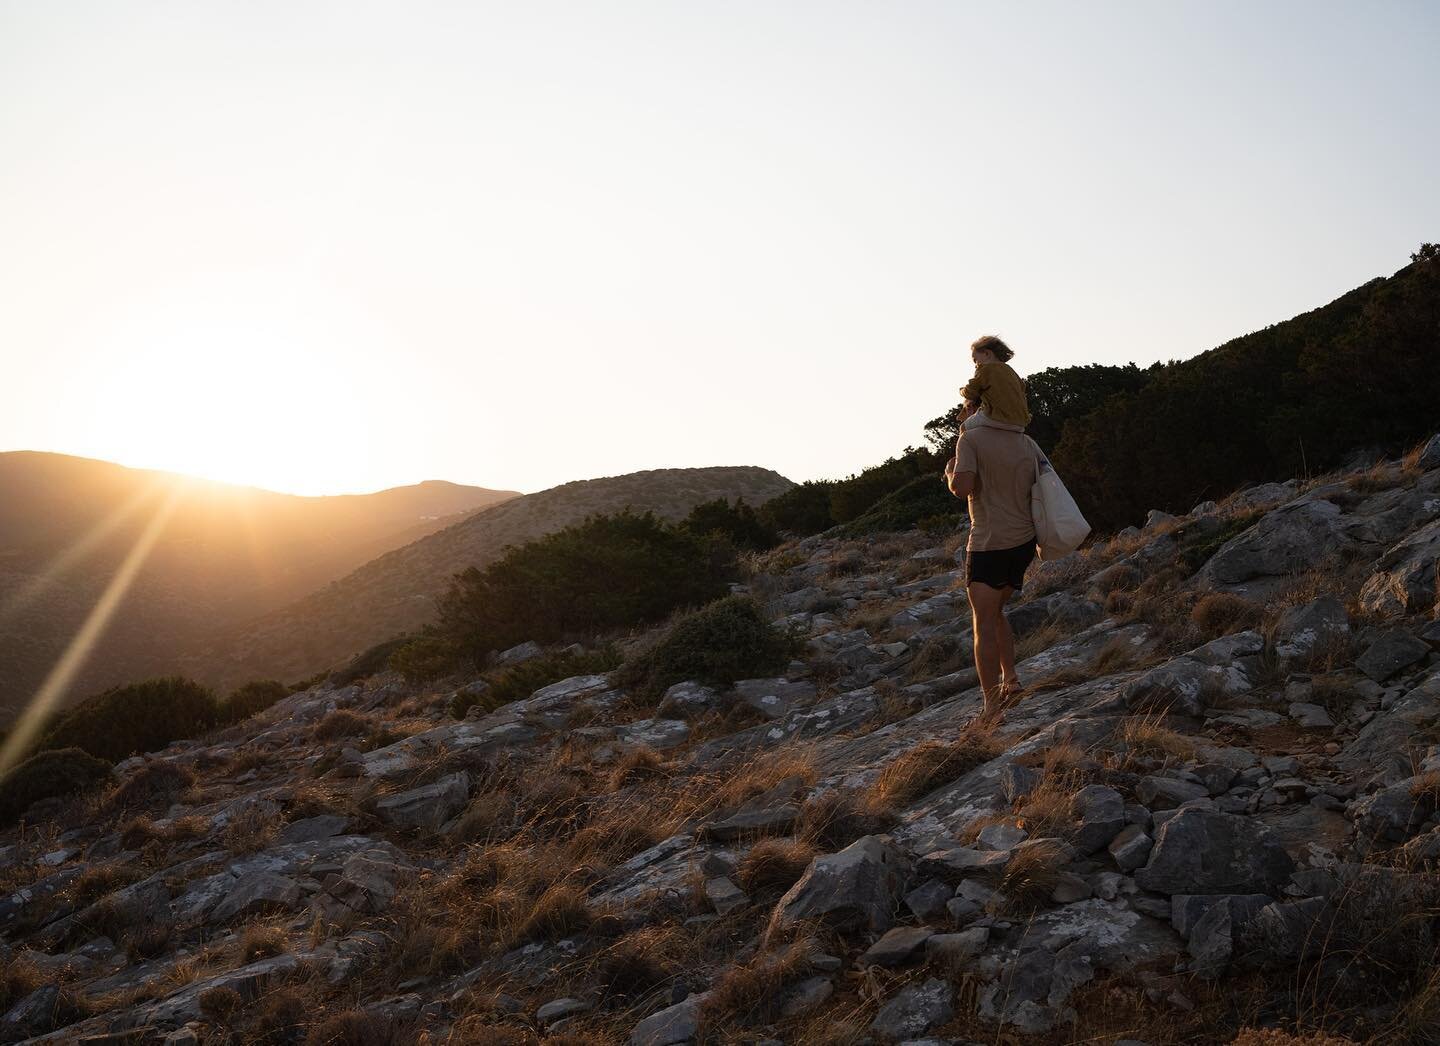 Wir haben schon so lange keinen Sonnenaufgang mehr gesehen. Deshalb war dieser hier besonders magisch. 🤍 Seid ihr auf Reisen eher Team Sonnenaufgang oder Sonnenuntergang? 
 
 

 

 

 

 
#Cyclades #Griechenland #Greece #Ermoupolis #Zykladen #travel